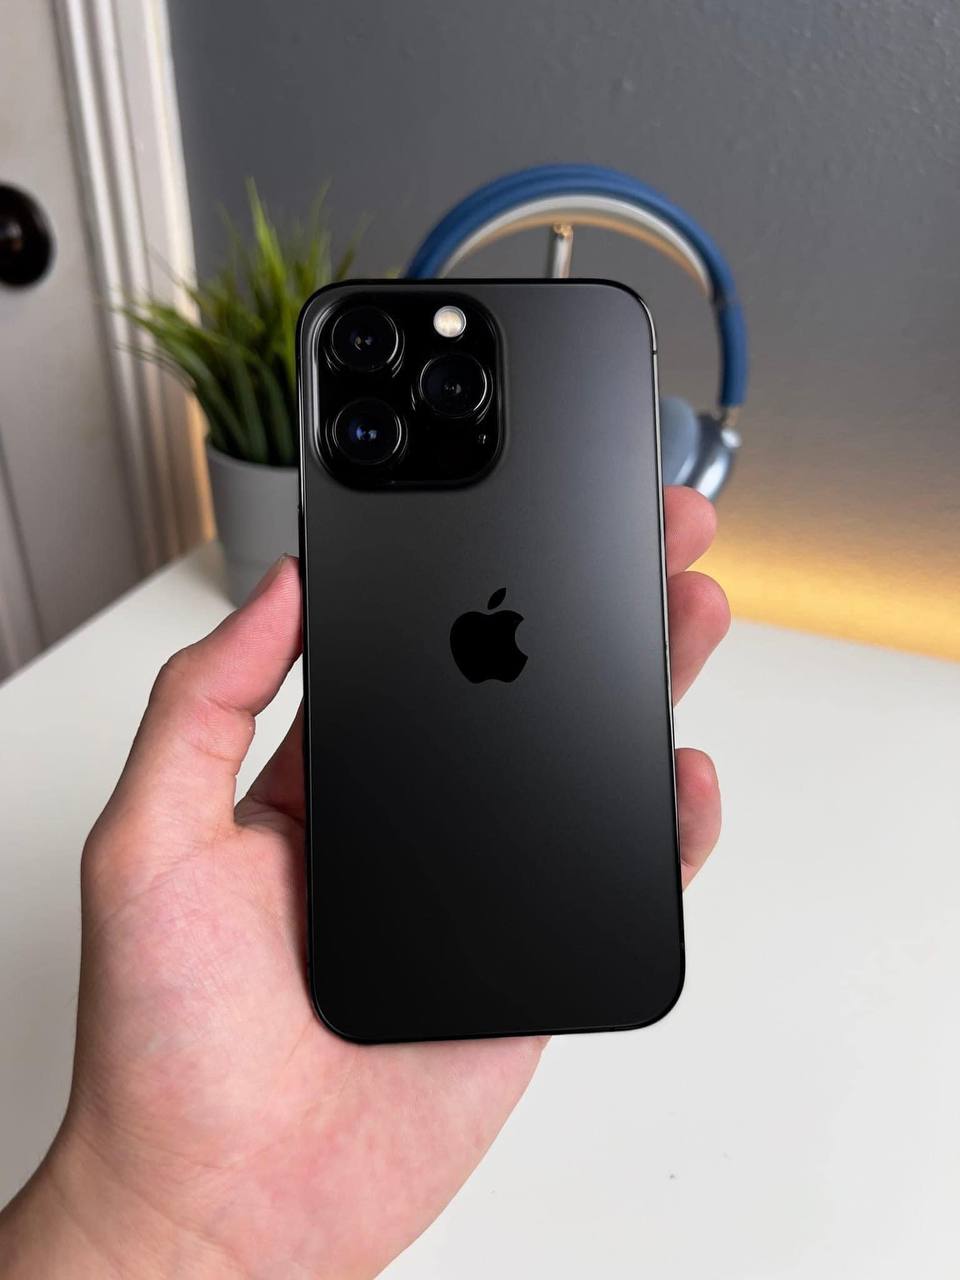 iPhone 14 chắc chắn sẽ là một sản phẩm tuyệt vời trong tương lai với những thiết kế đẳng cấp và màu sắc mới lạ. Nếu bạn đang tìm kiếm một điện thoại thông minh đẳng cấp, thì iPhone 14 chính là lựa chọn tuyệt vời nhất. Hãy cùng xem qua hình ảnh của một số mẫu máy này để có thể lựa chọn cho mình chiếc smartphone hoàn hảo nhất.